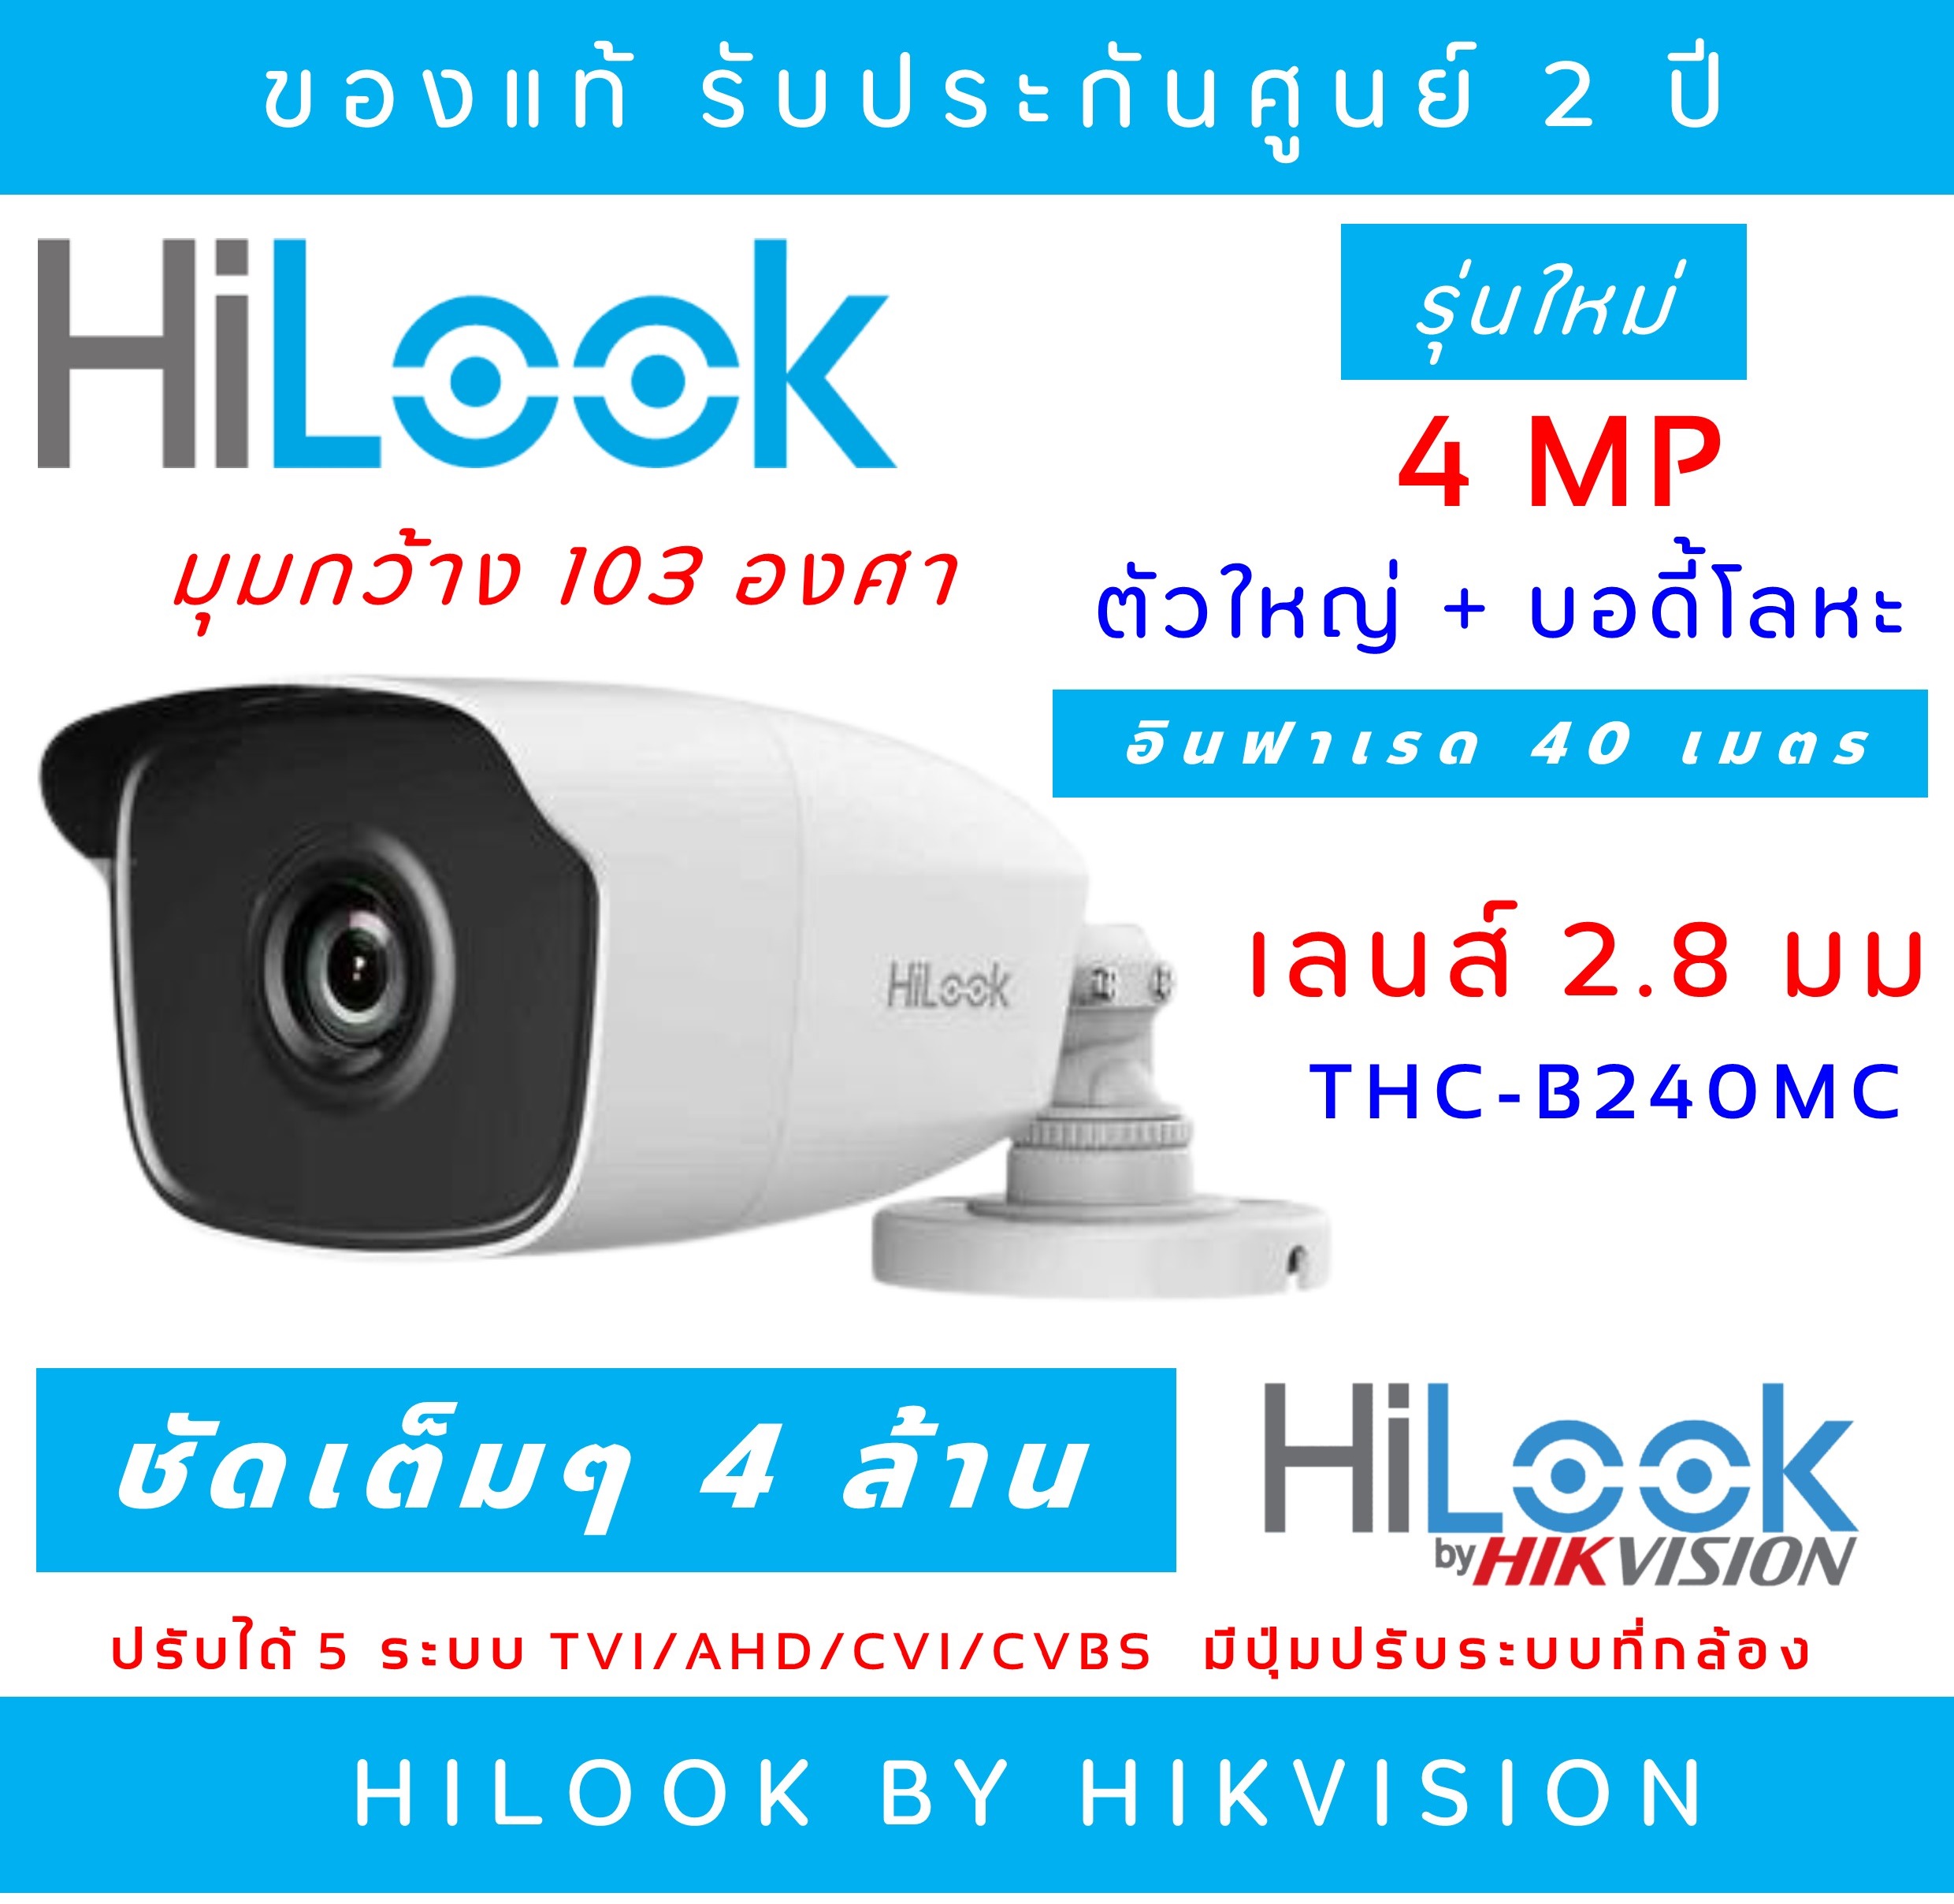 (4 ล้านพิกเซล) Hilook 4 MP (เลนส์ 2.8MM) กล้องวงจรปิด 4 Mega Pixel รุ่น THC-B240-M อินฟาเรดยิงไกล 40 เมตร (ไม่มีอแดปเตอร์แถม)